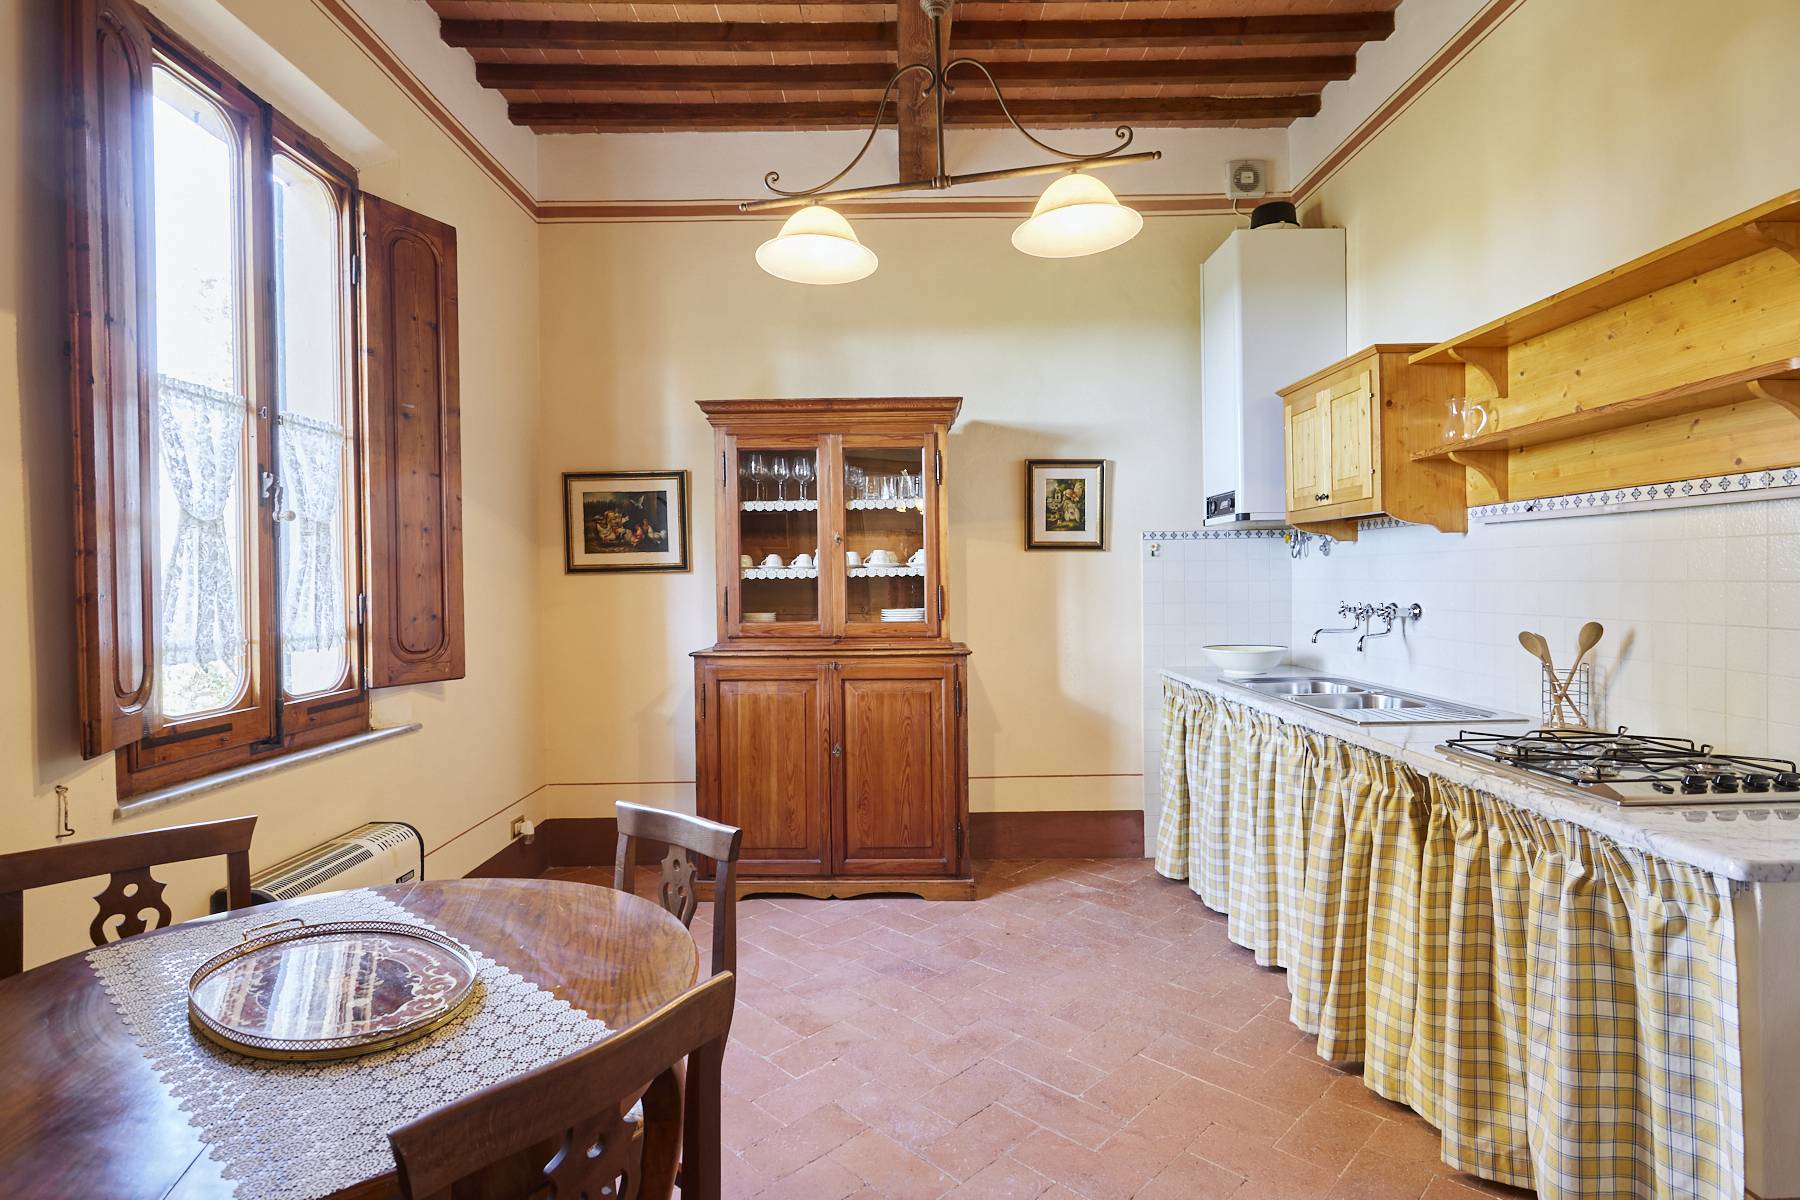 Villa in Vendita a Montepulciano: 5 locali, 860 mq - Foto 27